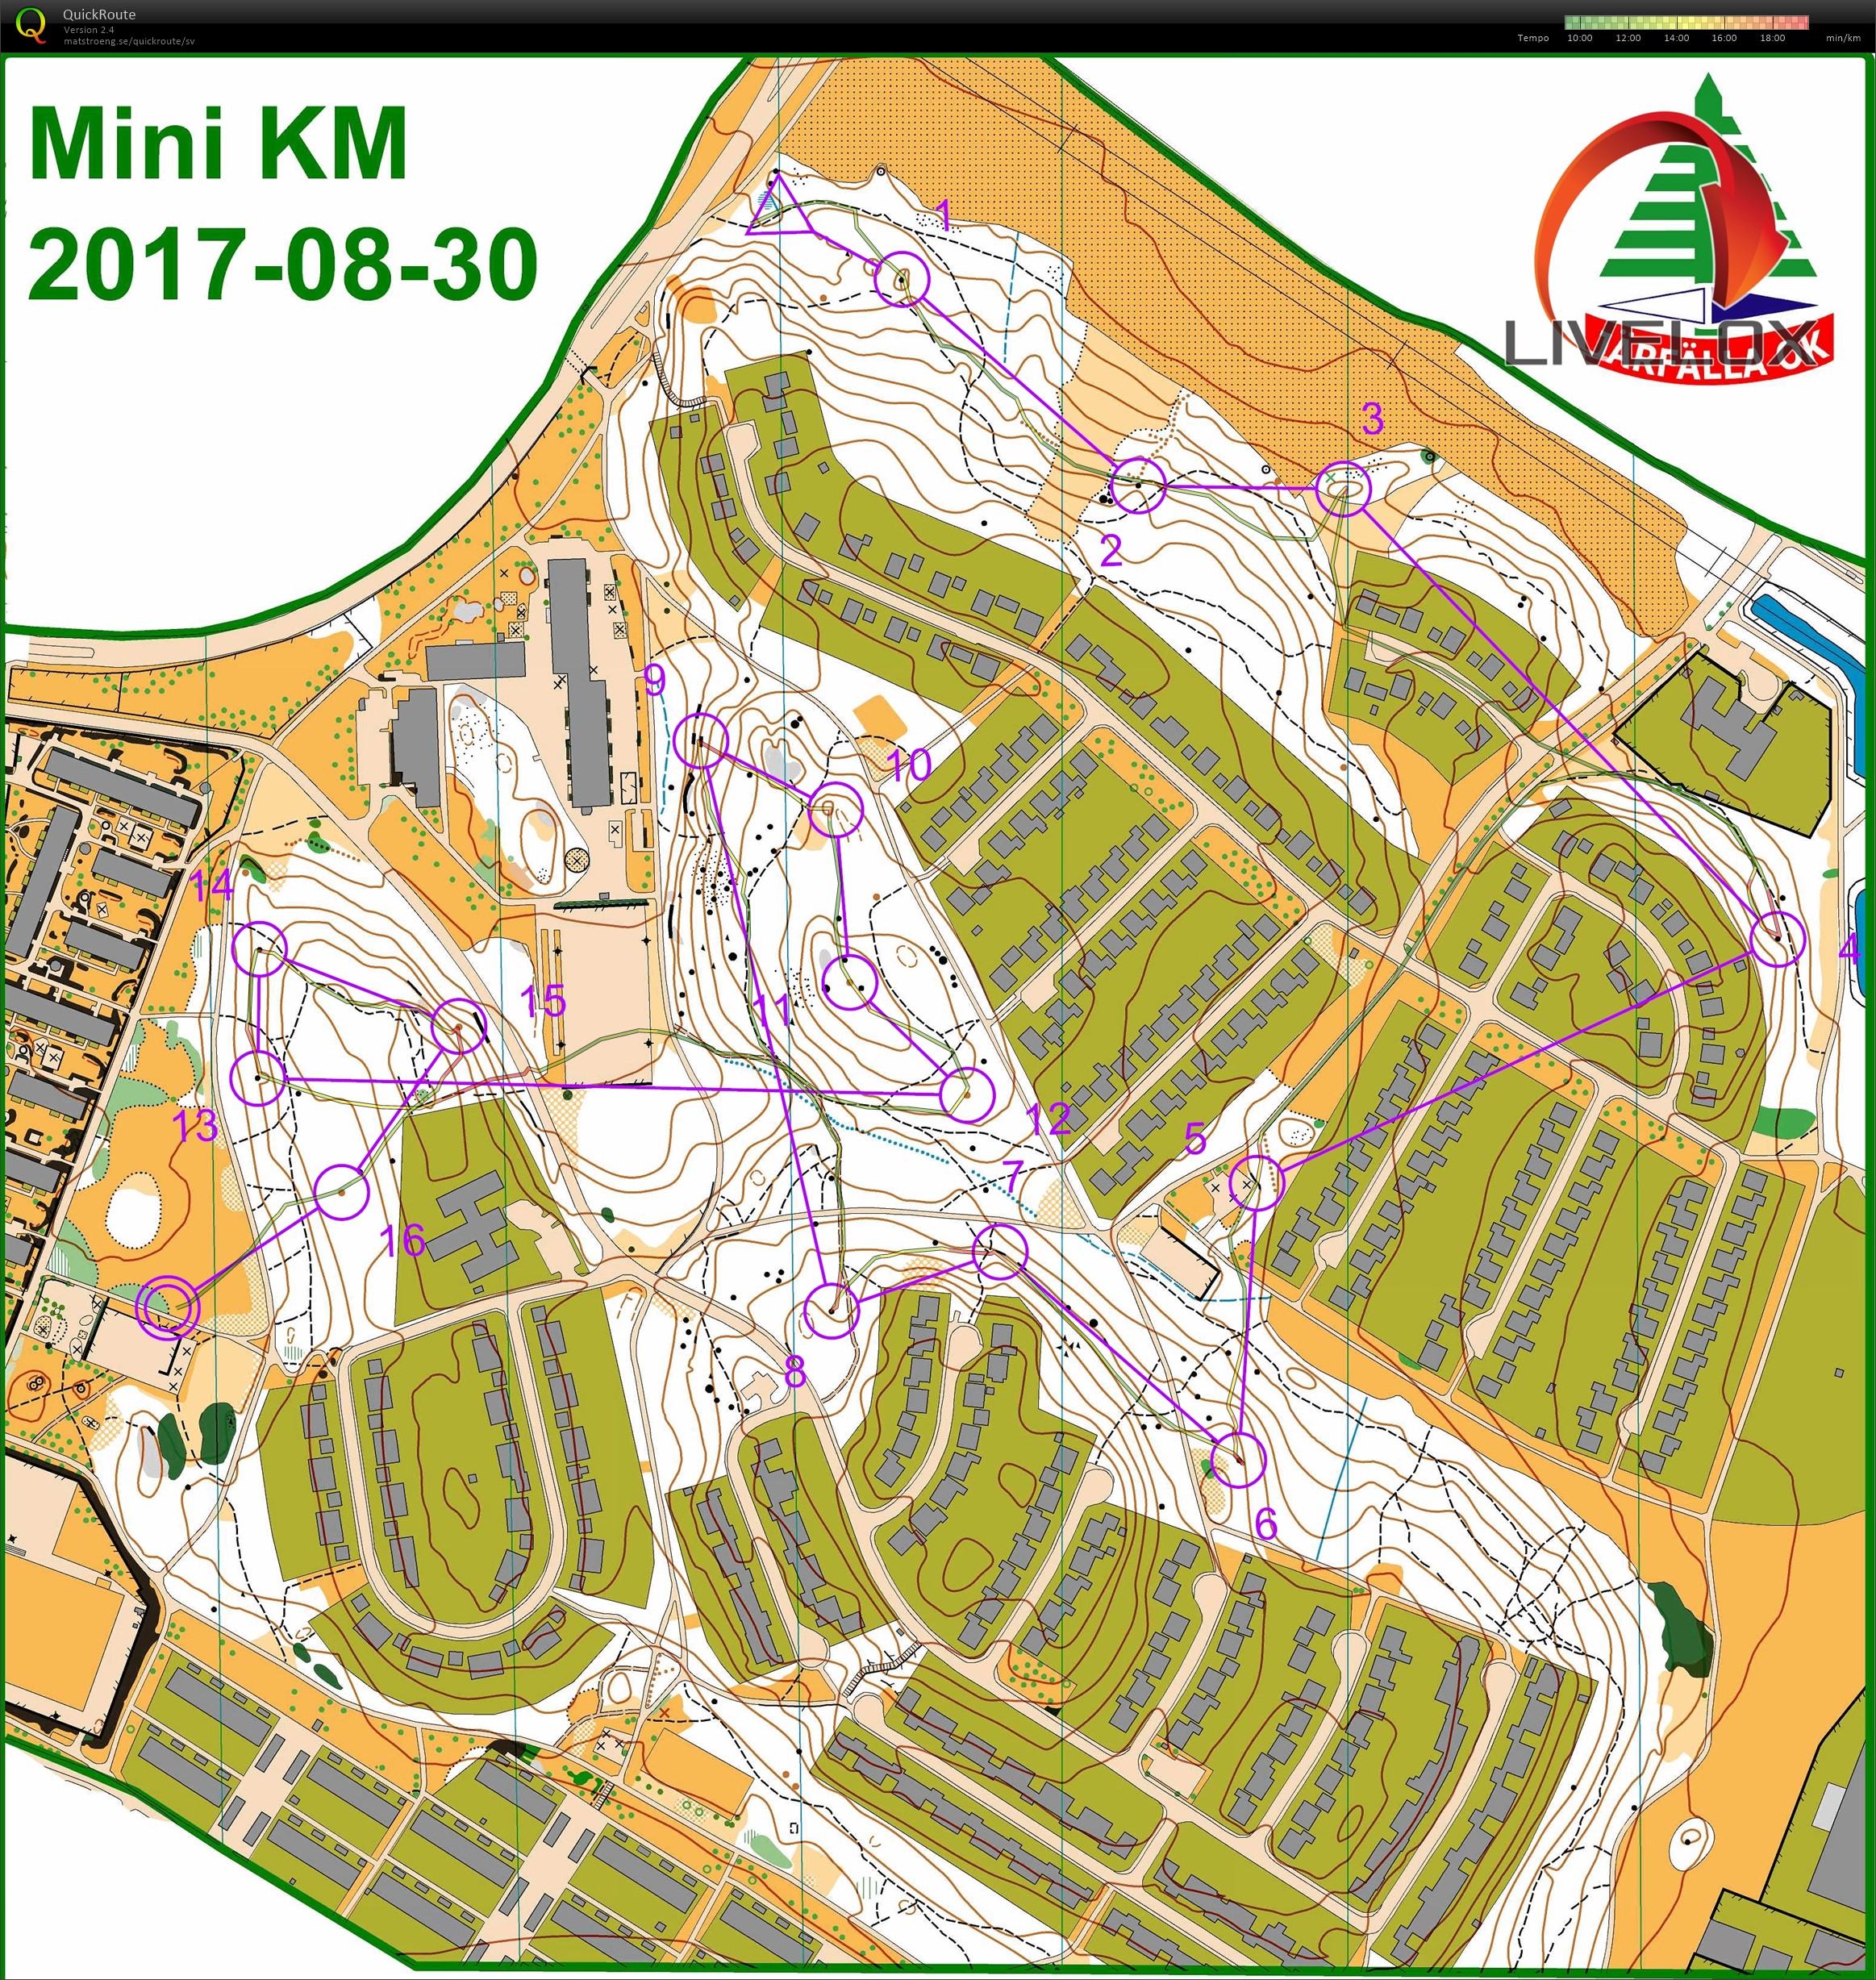 Mini-KM (2017-08-30)